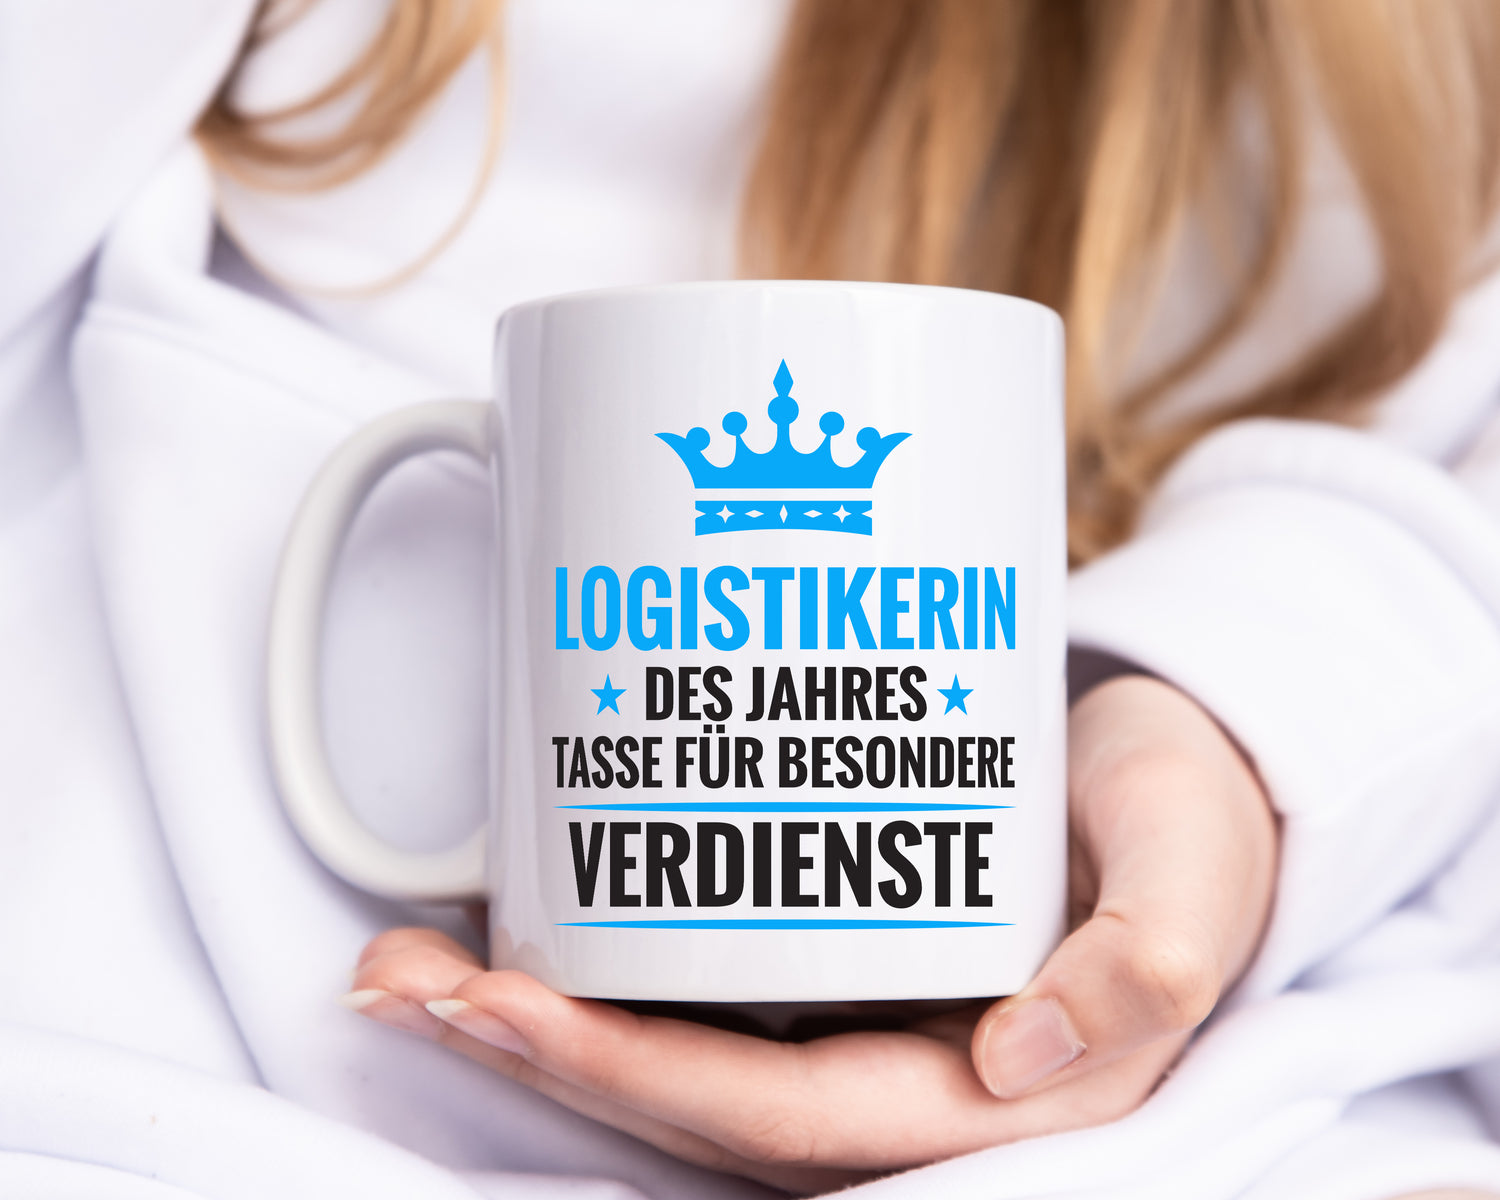 Besonderer Verdienst: Logistikerin | Logistik - Tasse Weiß - Kaffeetasse / Geschenk / Familie